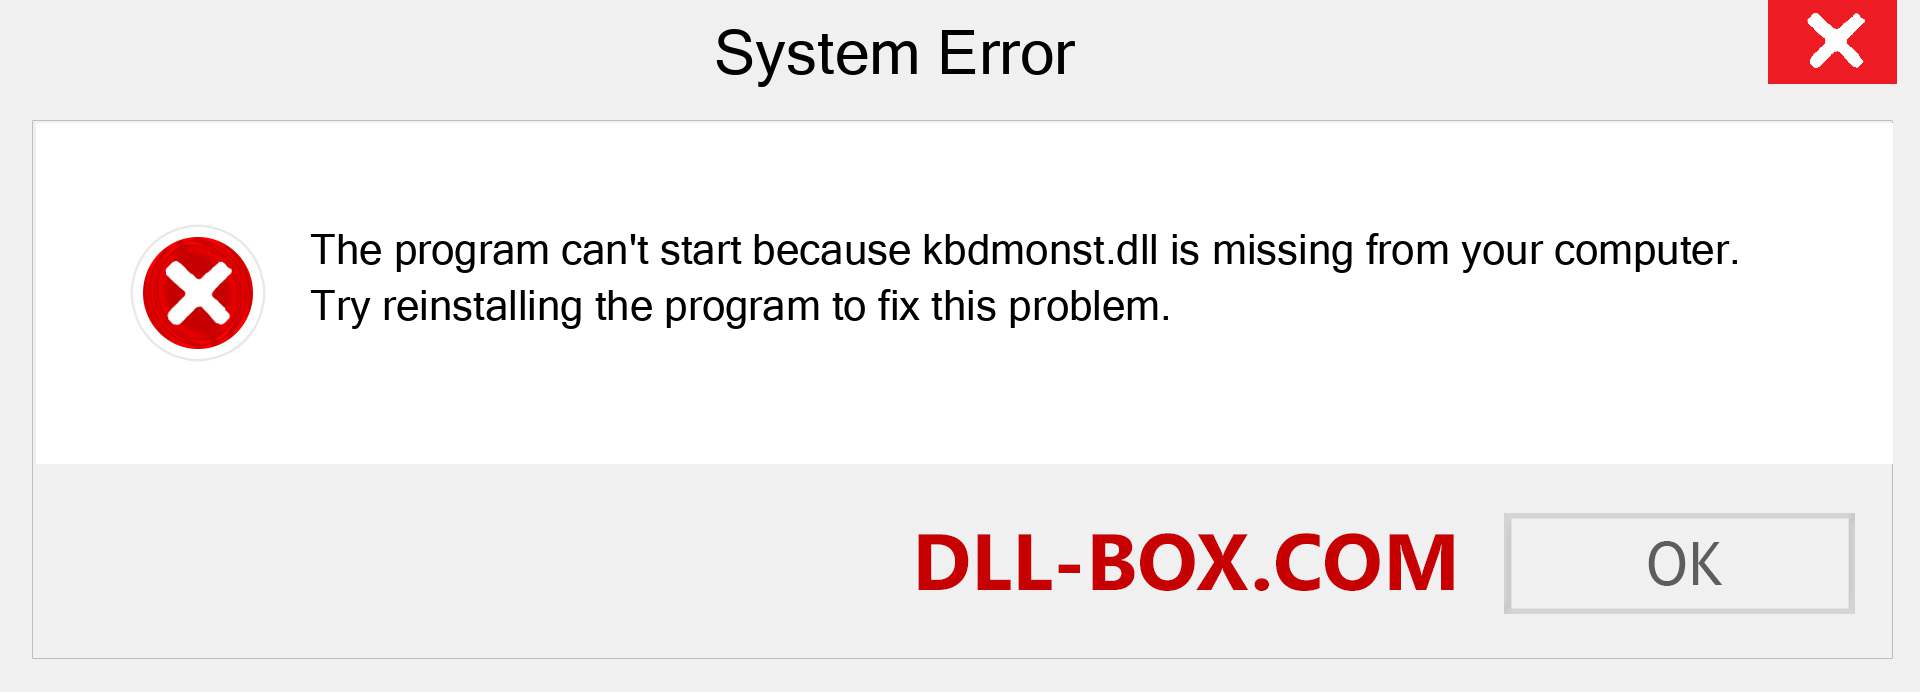  kbdmonst.dll file is missing?. Download for Windows 7, 8, 10 - Fix  kbdmonst dll Missing Error on Windows, photos, images